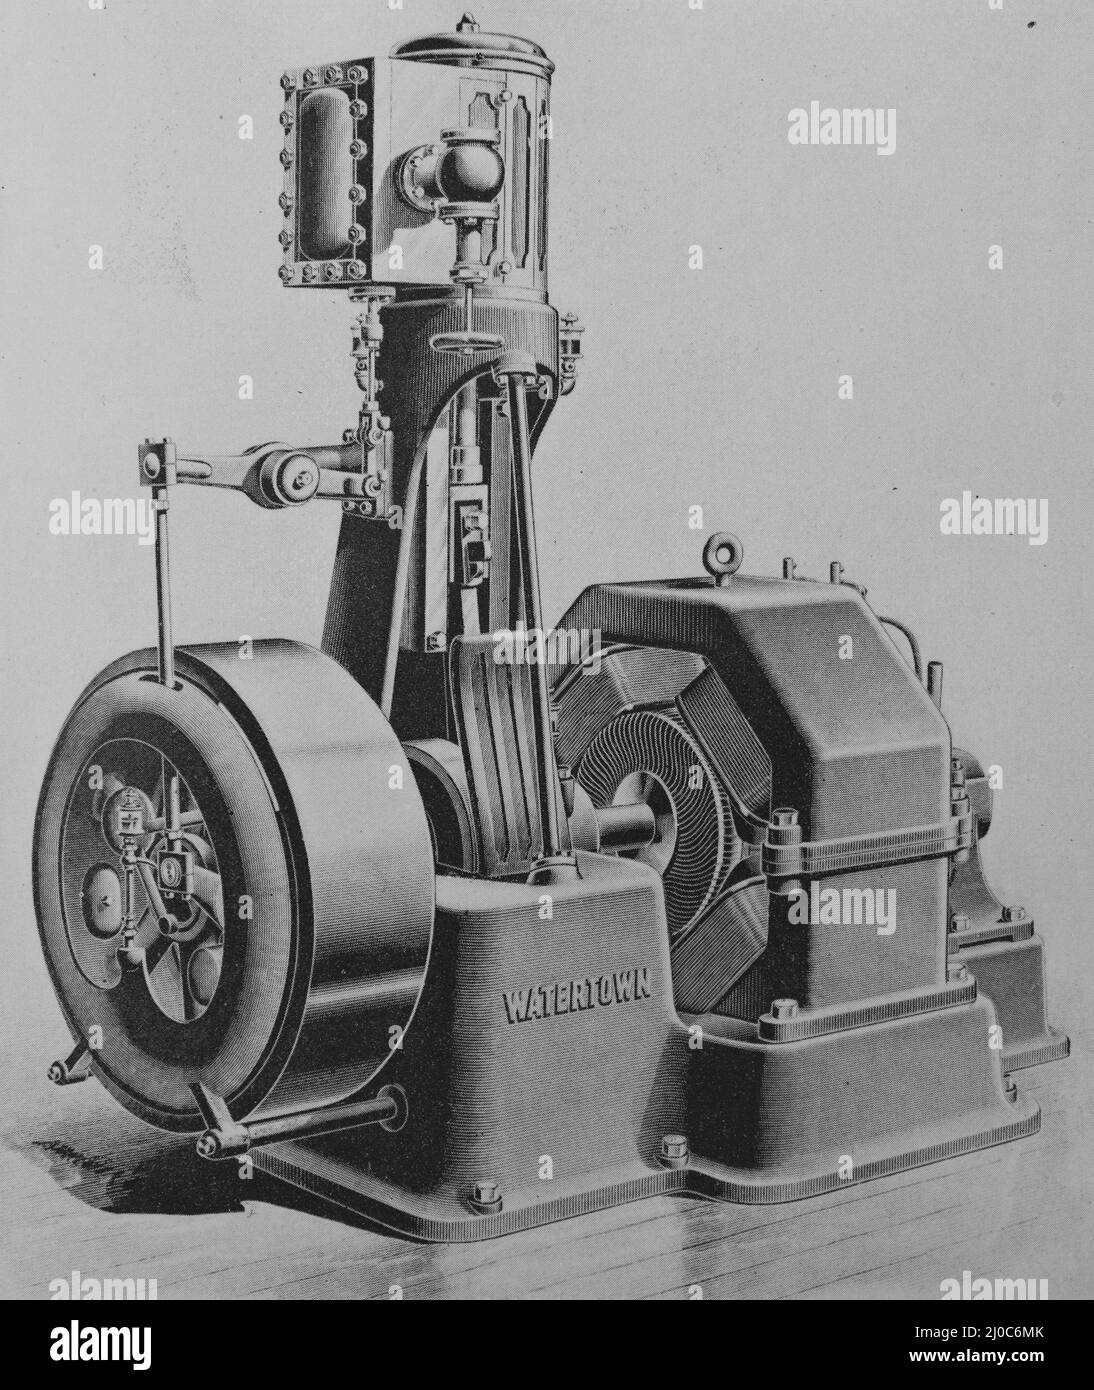 Direkt verbundener Motor, gebaut von der Watertown Steam Engine Company, Watertown New York. Schwarz-Weiß-Abbildung; Stockfoto